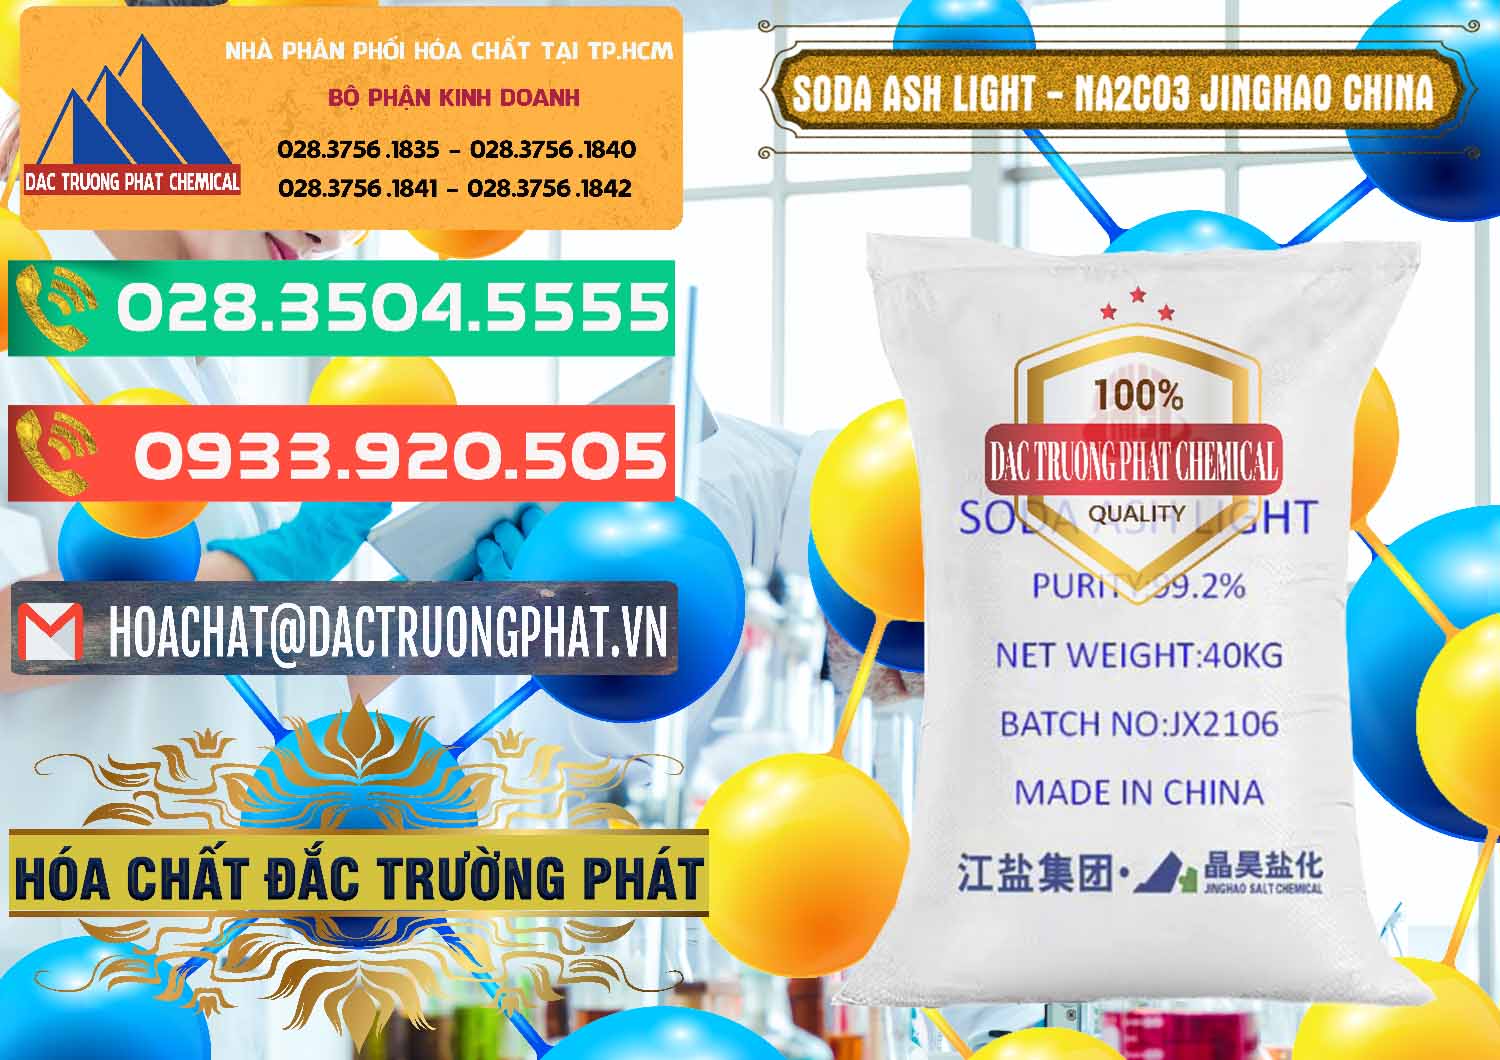 Nơi phân phối & bán Soda Ash Light - NA2CO3 Jinghao Trung Quốc China - 0339 - Nhà nhập khẩu ( cung cấp ) hóa chất tại TP.HCM - congtyhoachat.com.vn